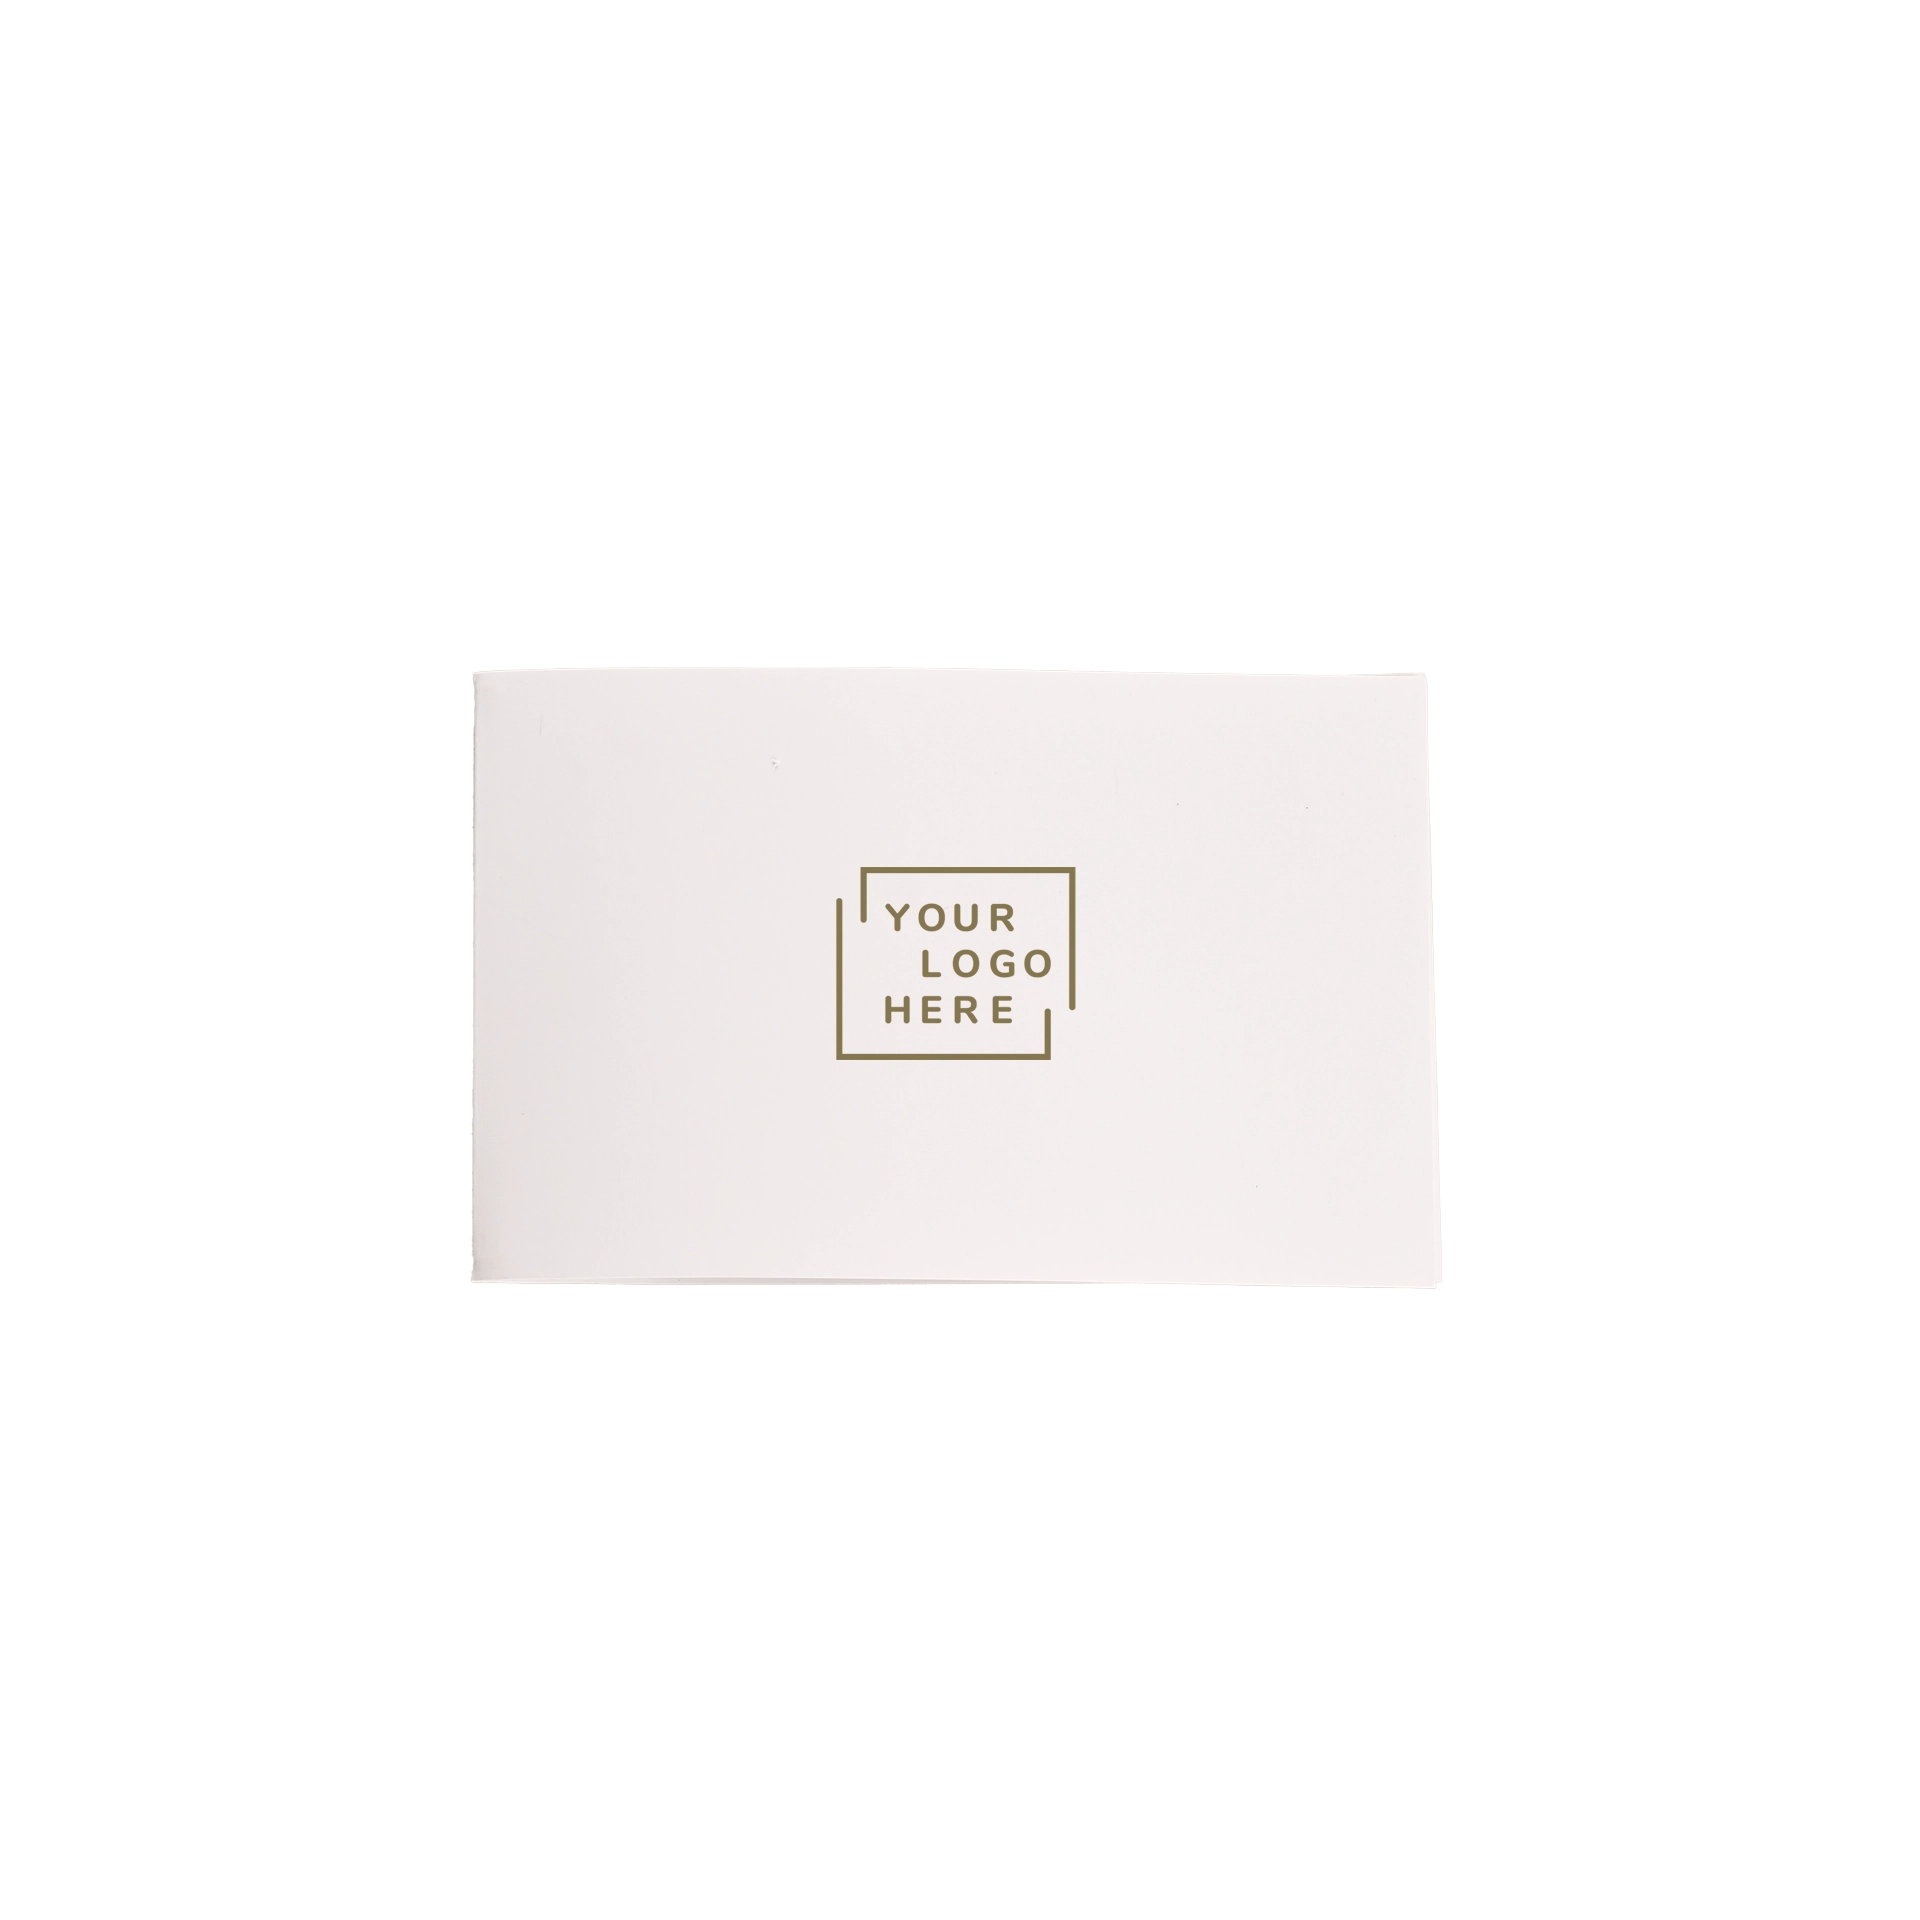 Astuccio keycard E1 11x7 cm carta patinata oppure Usomano stampa 4/4 colore stampa digitale